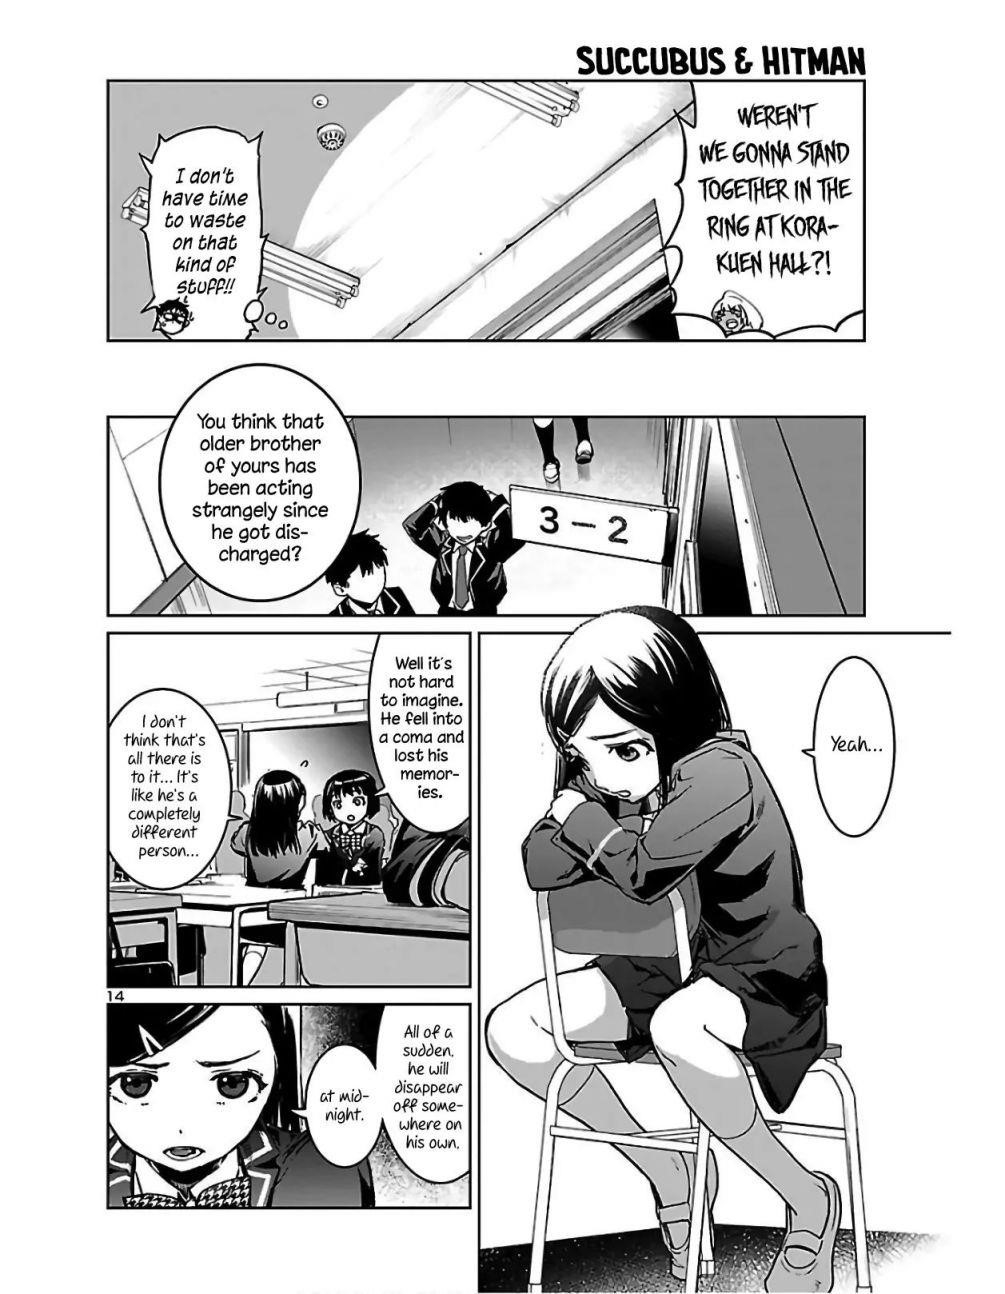 futanari succubus manga